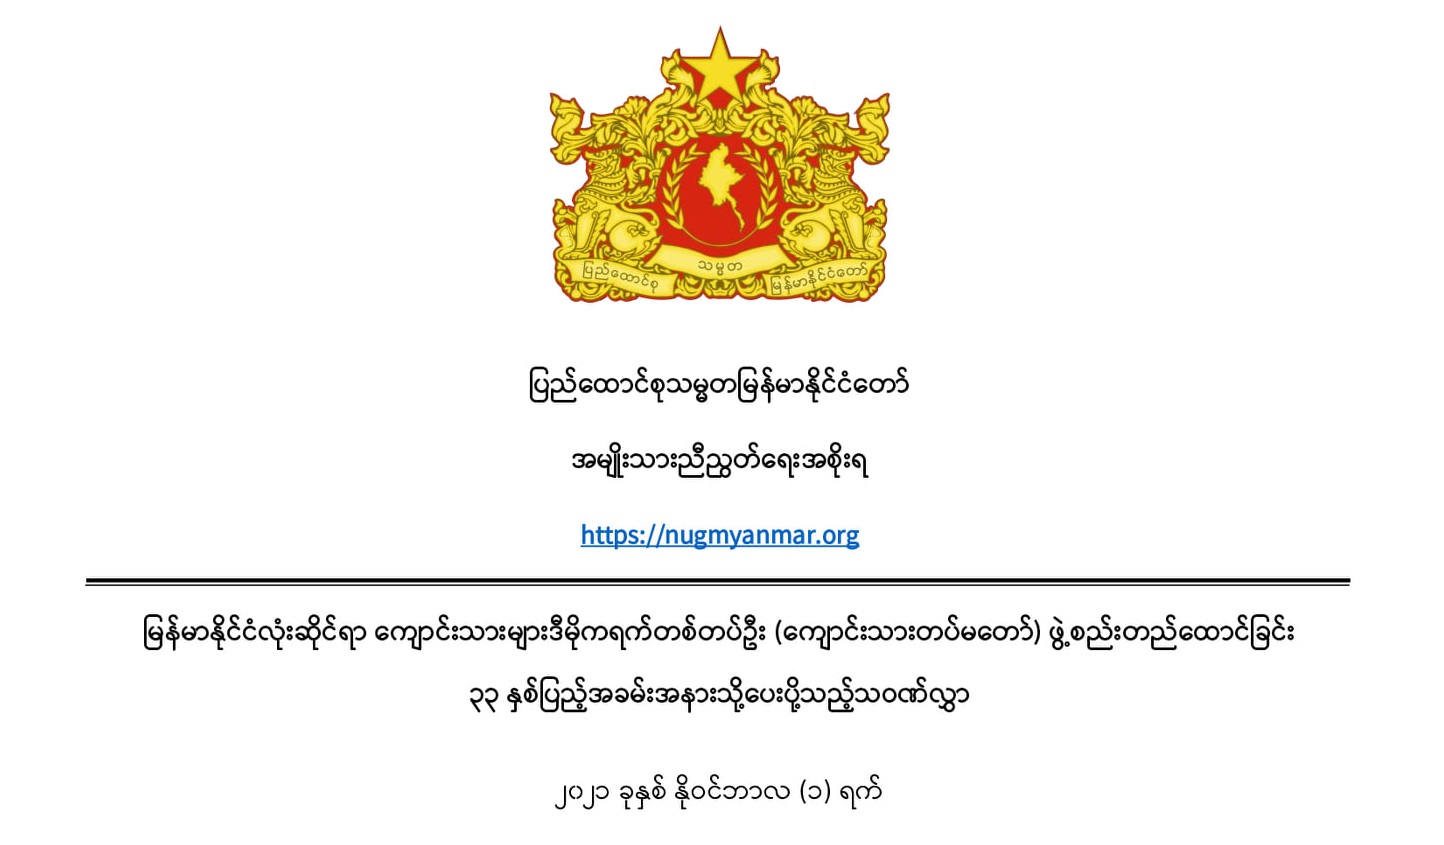 မြန်မာနိုင်ငံလုံးဆိုင်ရာ ကျောင်းသားများဒီမိုကရက်တစ်တပ်ဦး (ကျောင်းသားတပ်မတော်) ဖွဲ့စည်းတည်ထောင်ခြင်း ၃၃ နှစ်ပြည့်အခမ်းအနားသို့ပေးပို့သည့်သဝဏ်လွှာ